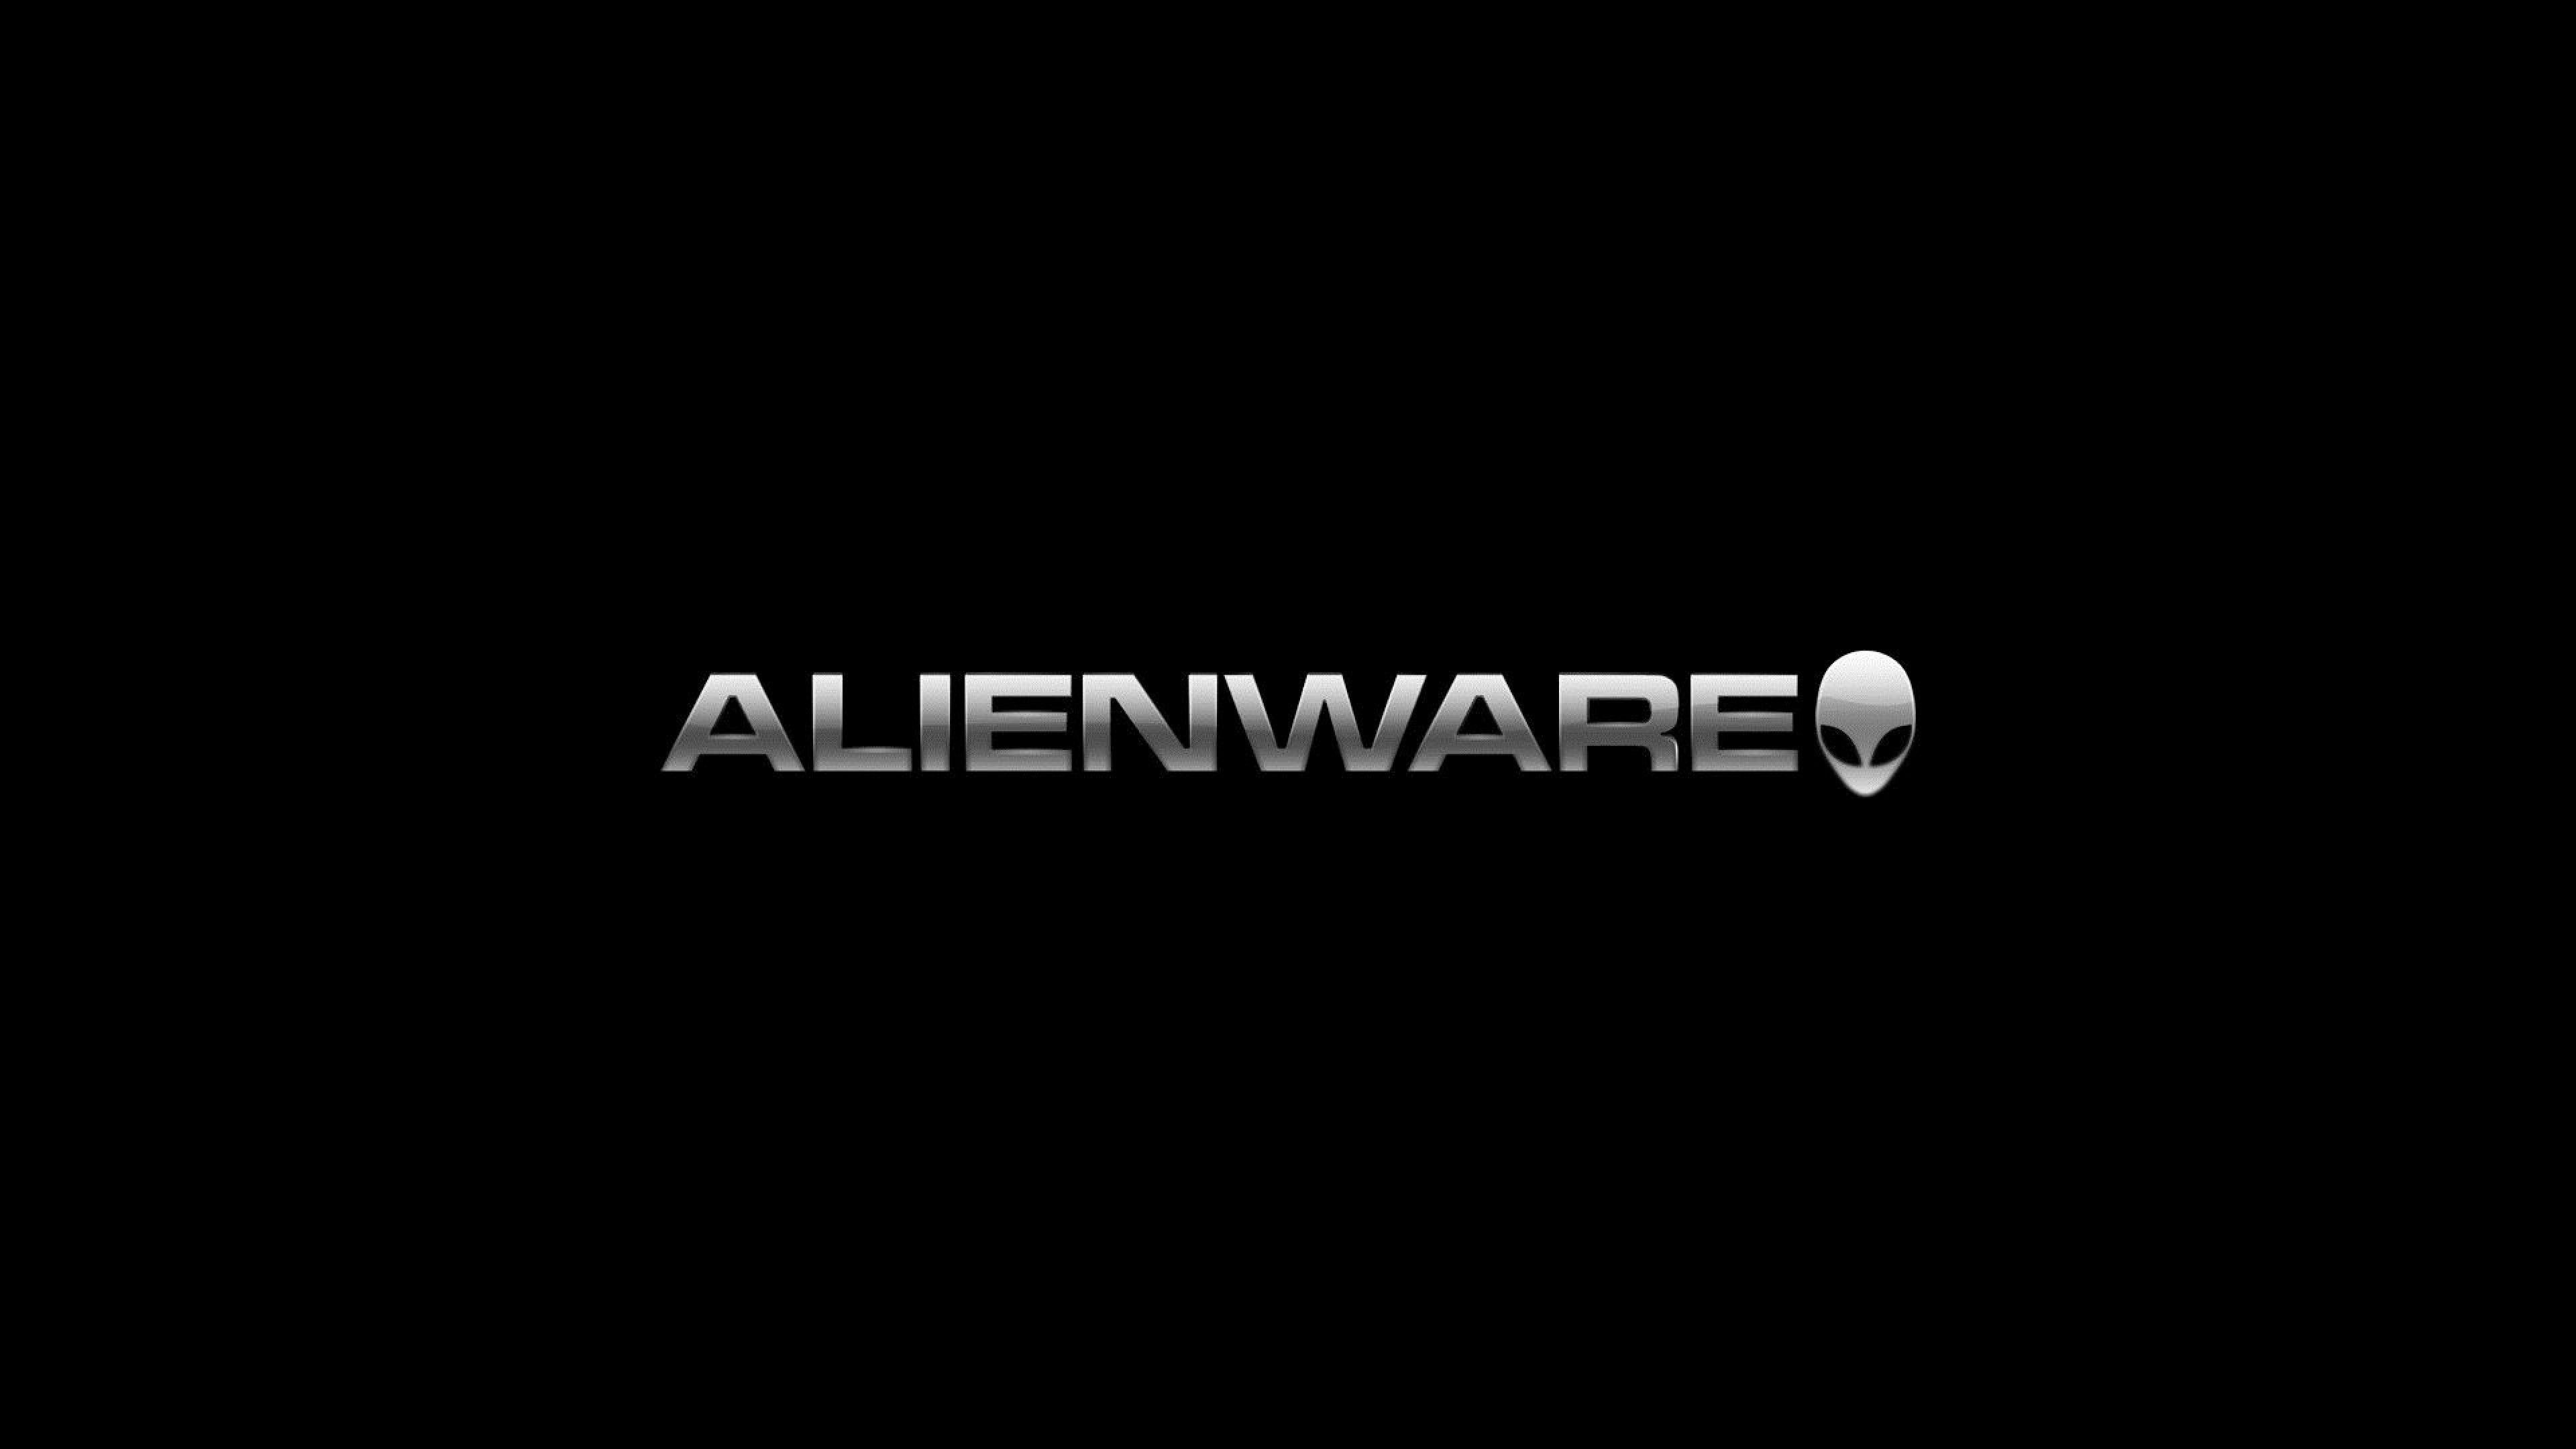 3840X2160 Alienware Wallpapers - Top Free 3840X2160 Alienware Backgrounds 3840x2160